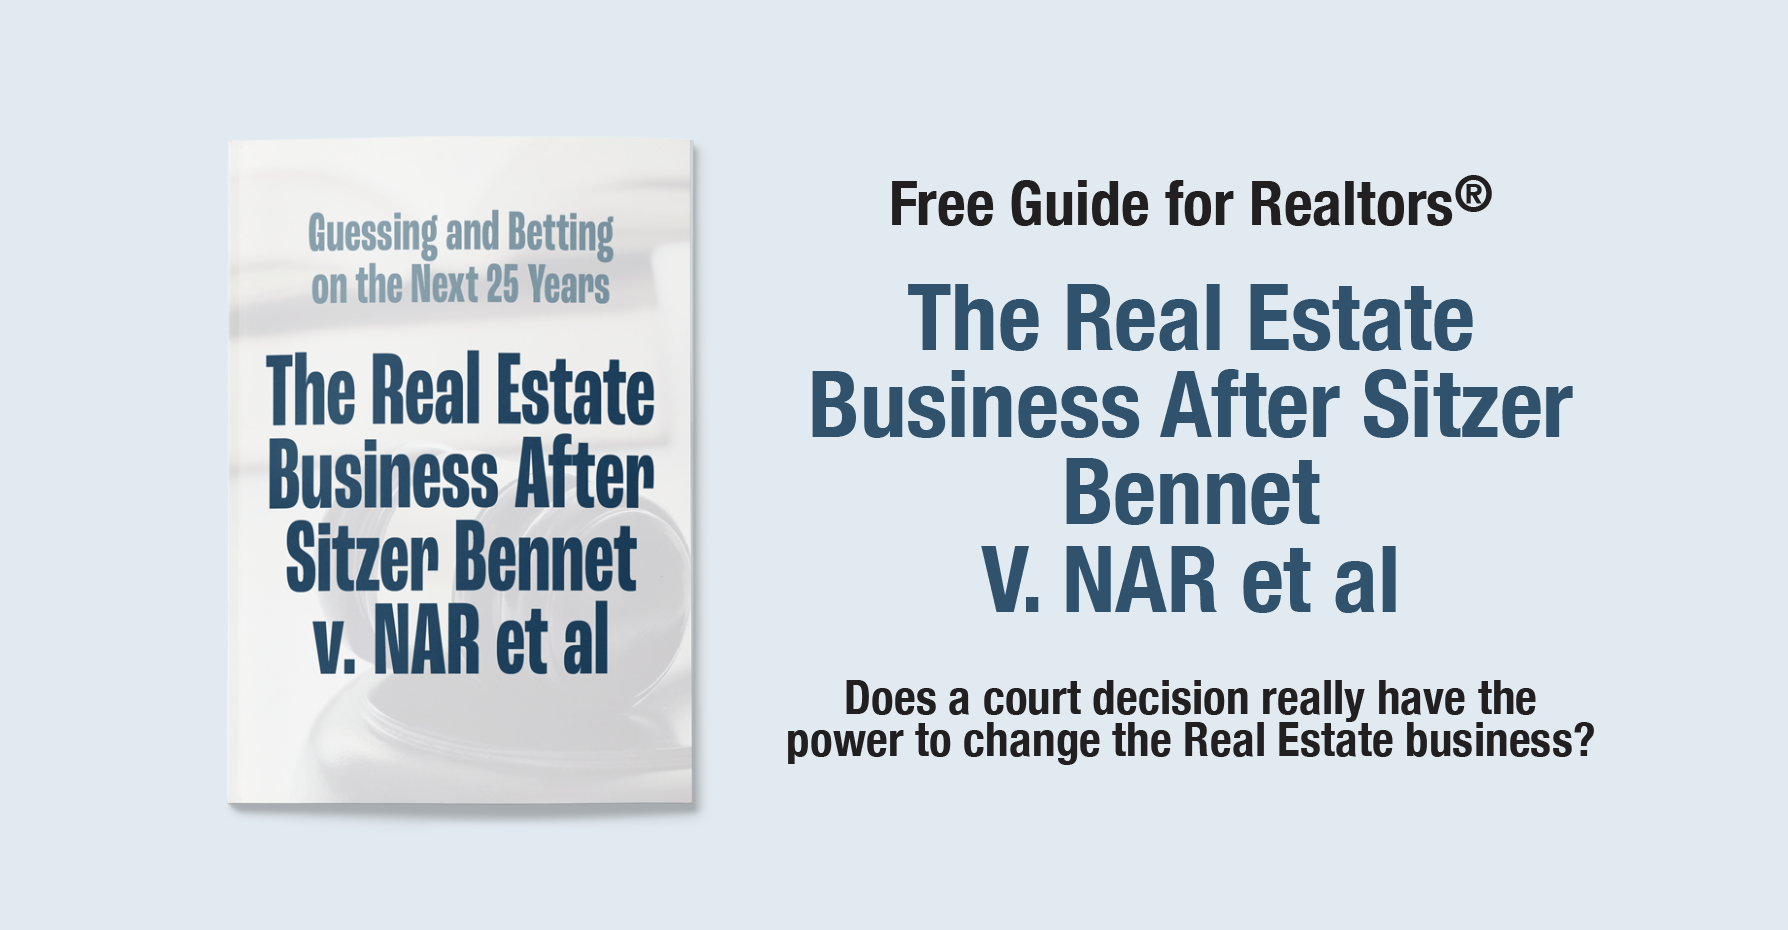 The Real Estate Business After Sitzer Bennet v. NAR et al